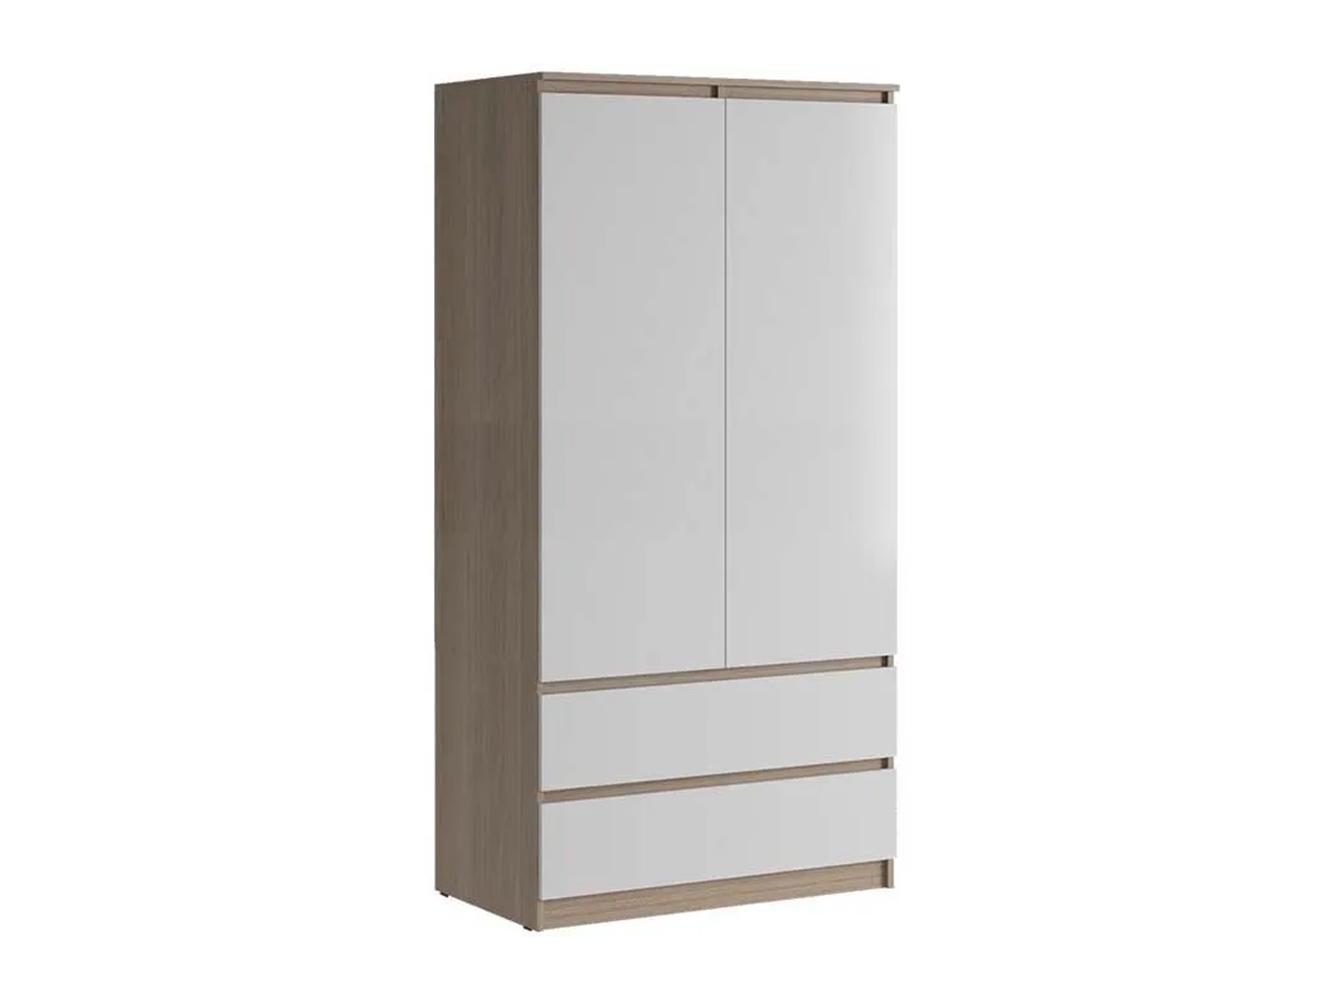 Распашной шкаф Мальм 313 oak white ИКЕА (IKEA) изображение товара